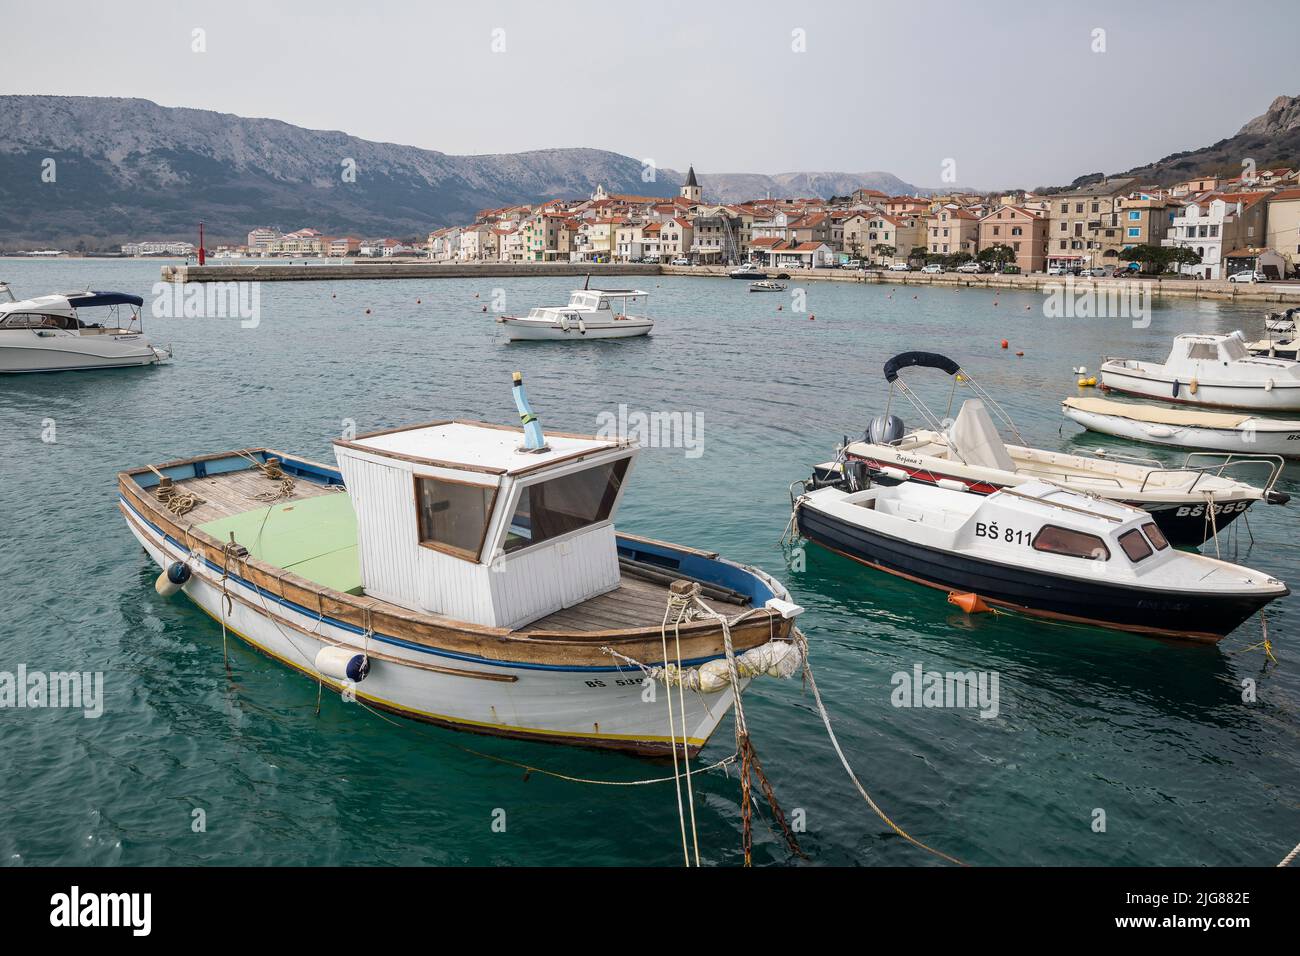 Boats in Baska harbor, Adriatic coast, Krk island, Kvarner bay, Primorje-Gorski kotar county, Croatia, Europe Stock Photo